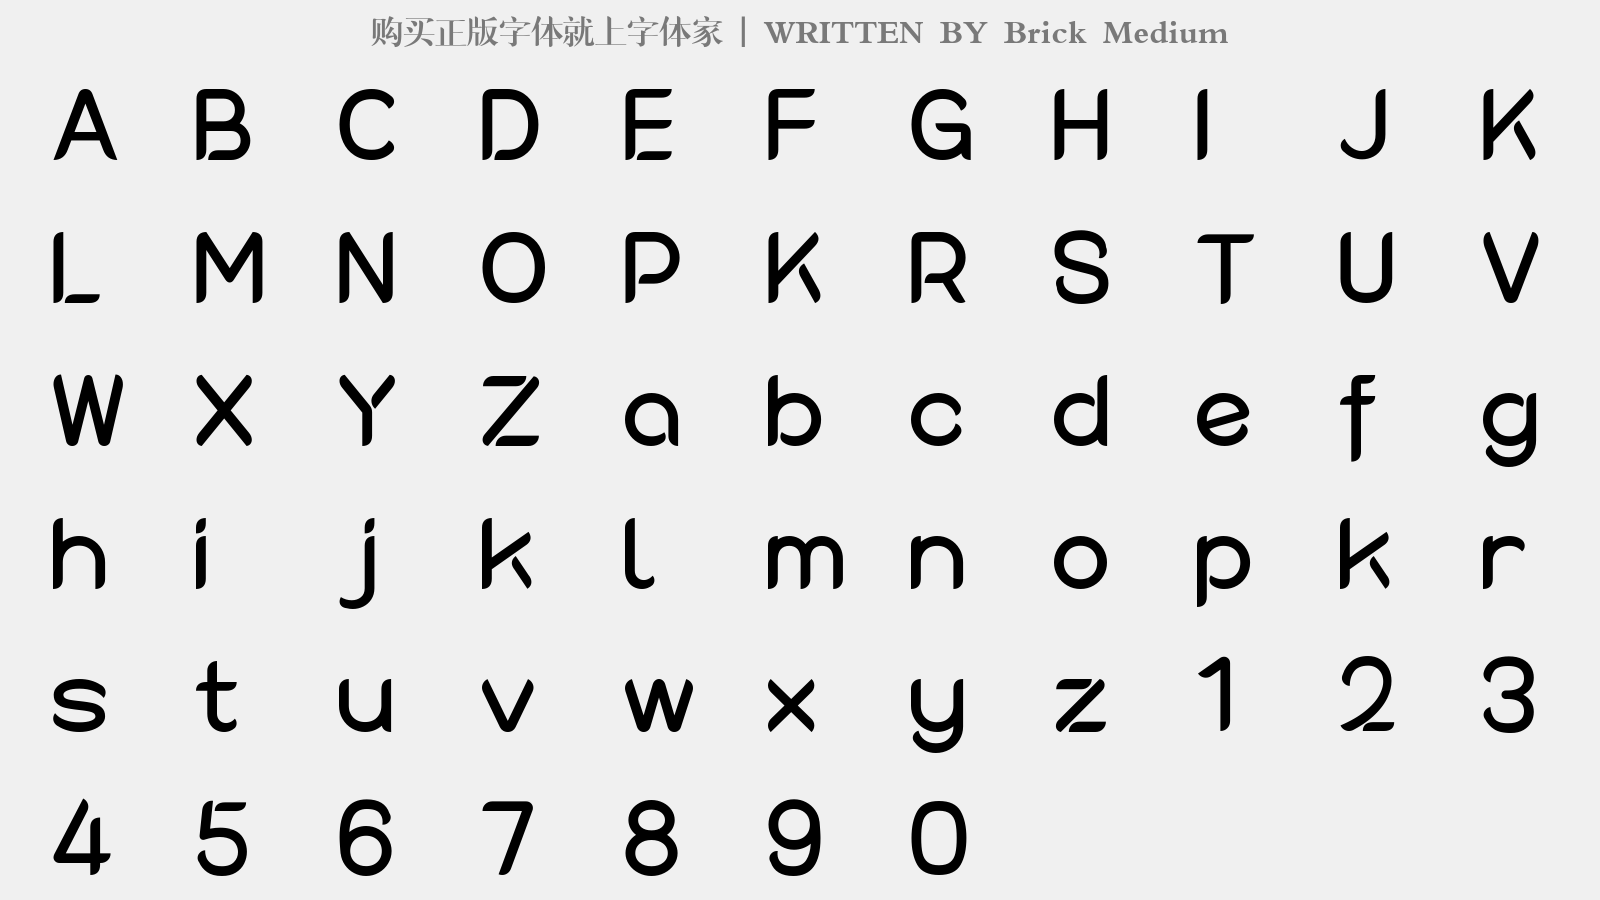 Brick Medium - 大写字母/小写字母/数字